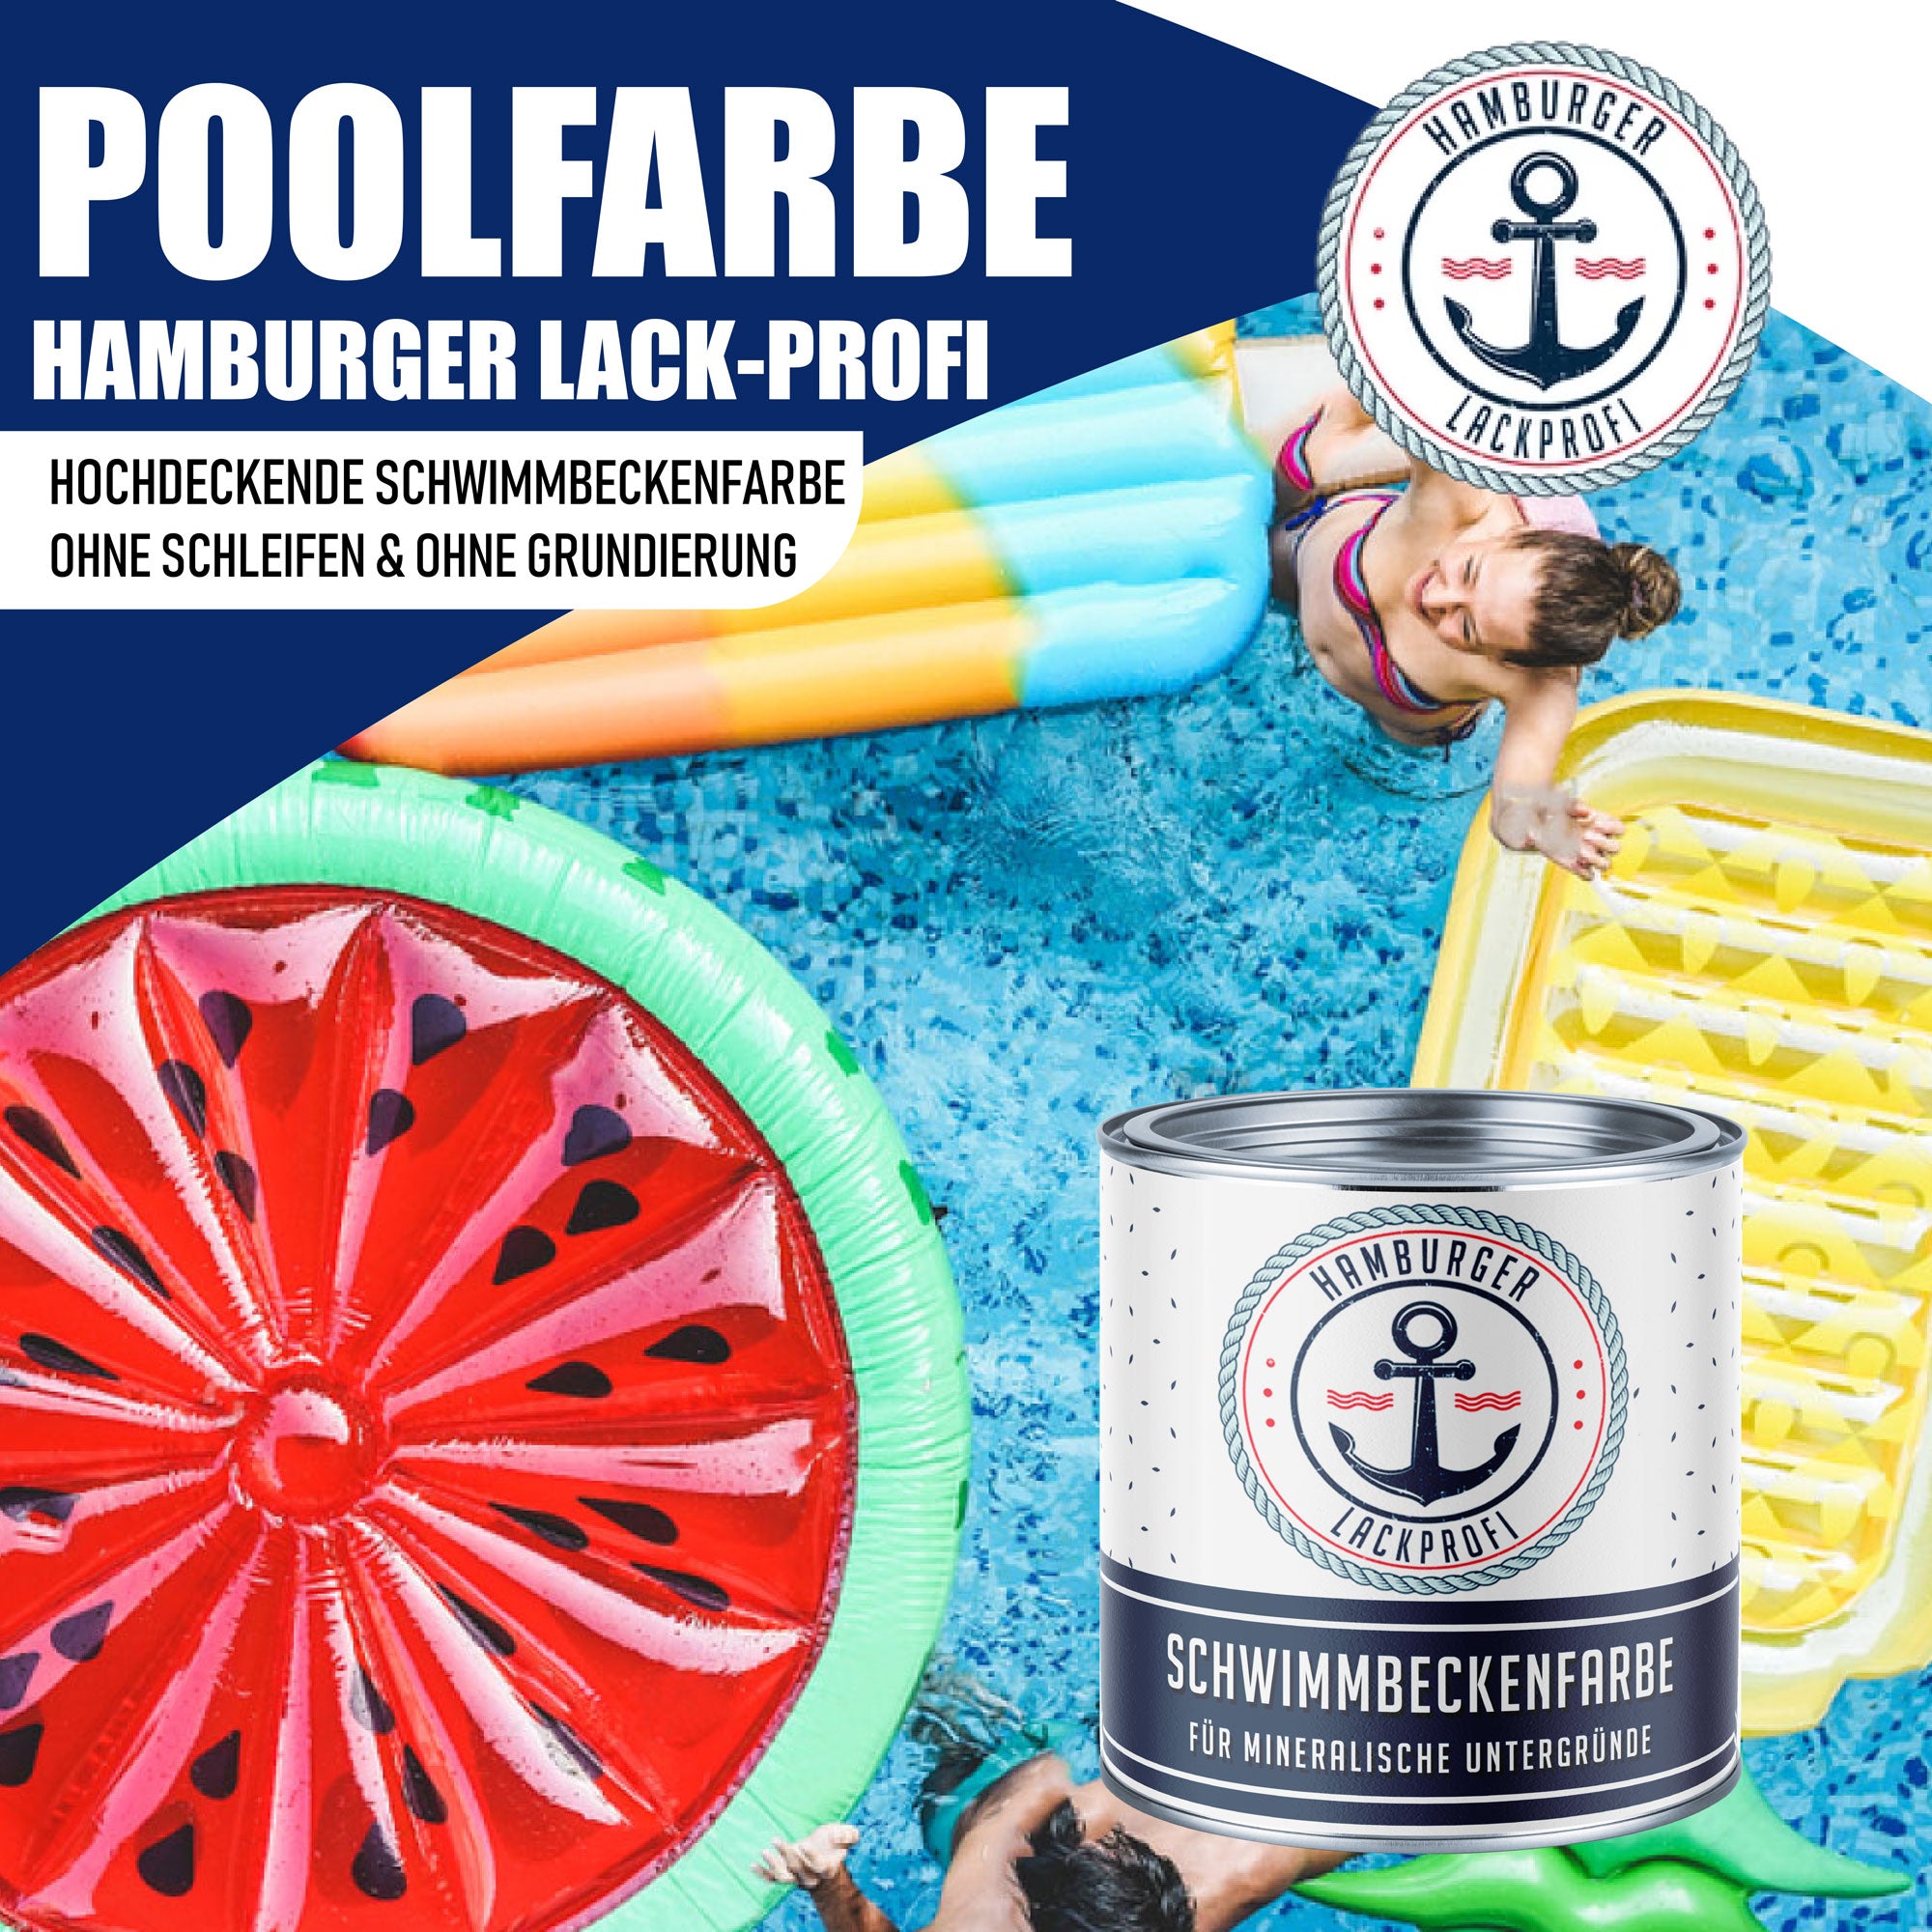 Hamburger Lack-Profi Schwimmbeckenfarbe Schwarzoliv RAL 6015 - hochdeckende Poolfarbe